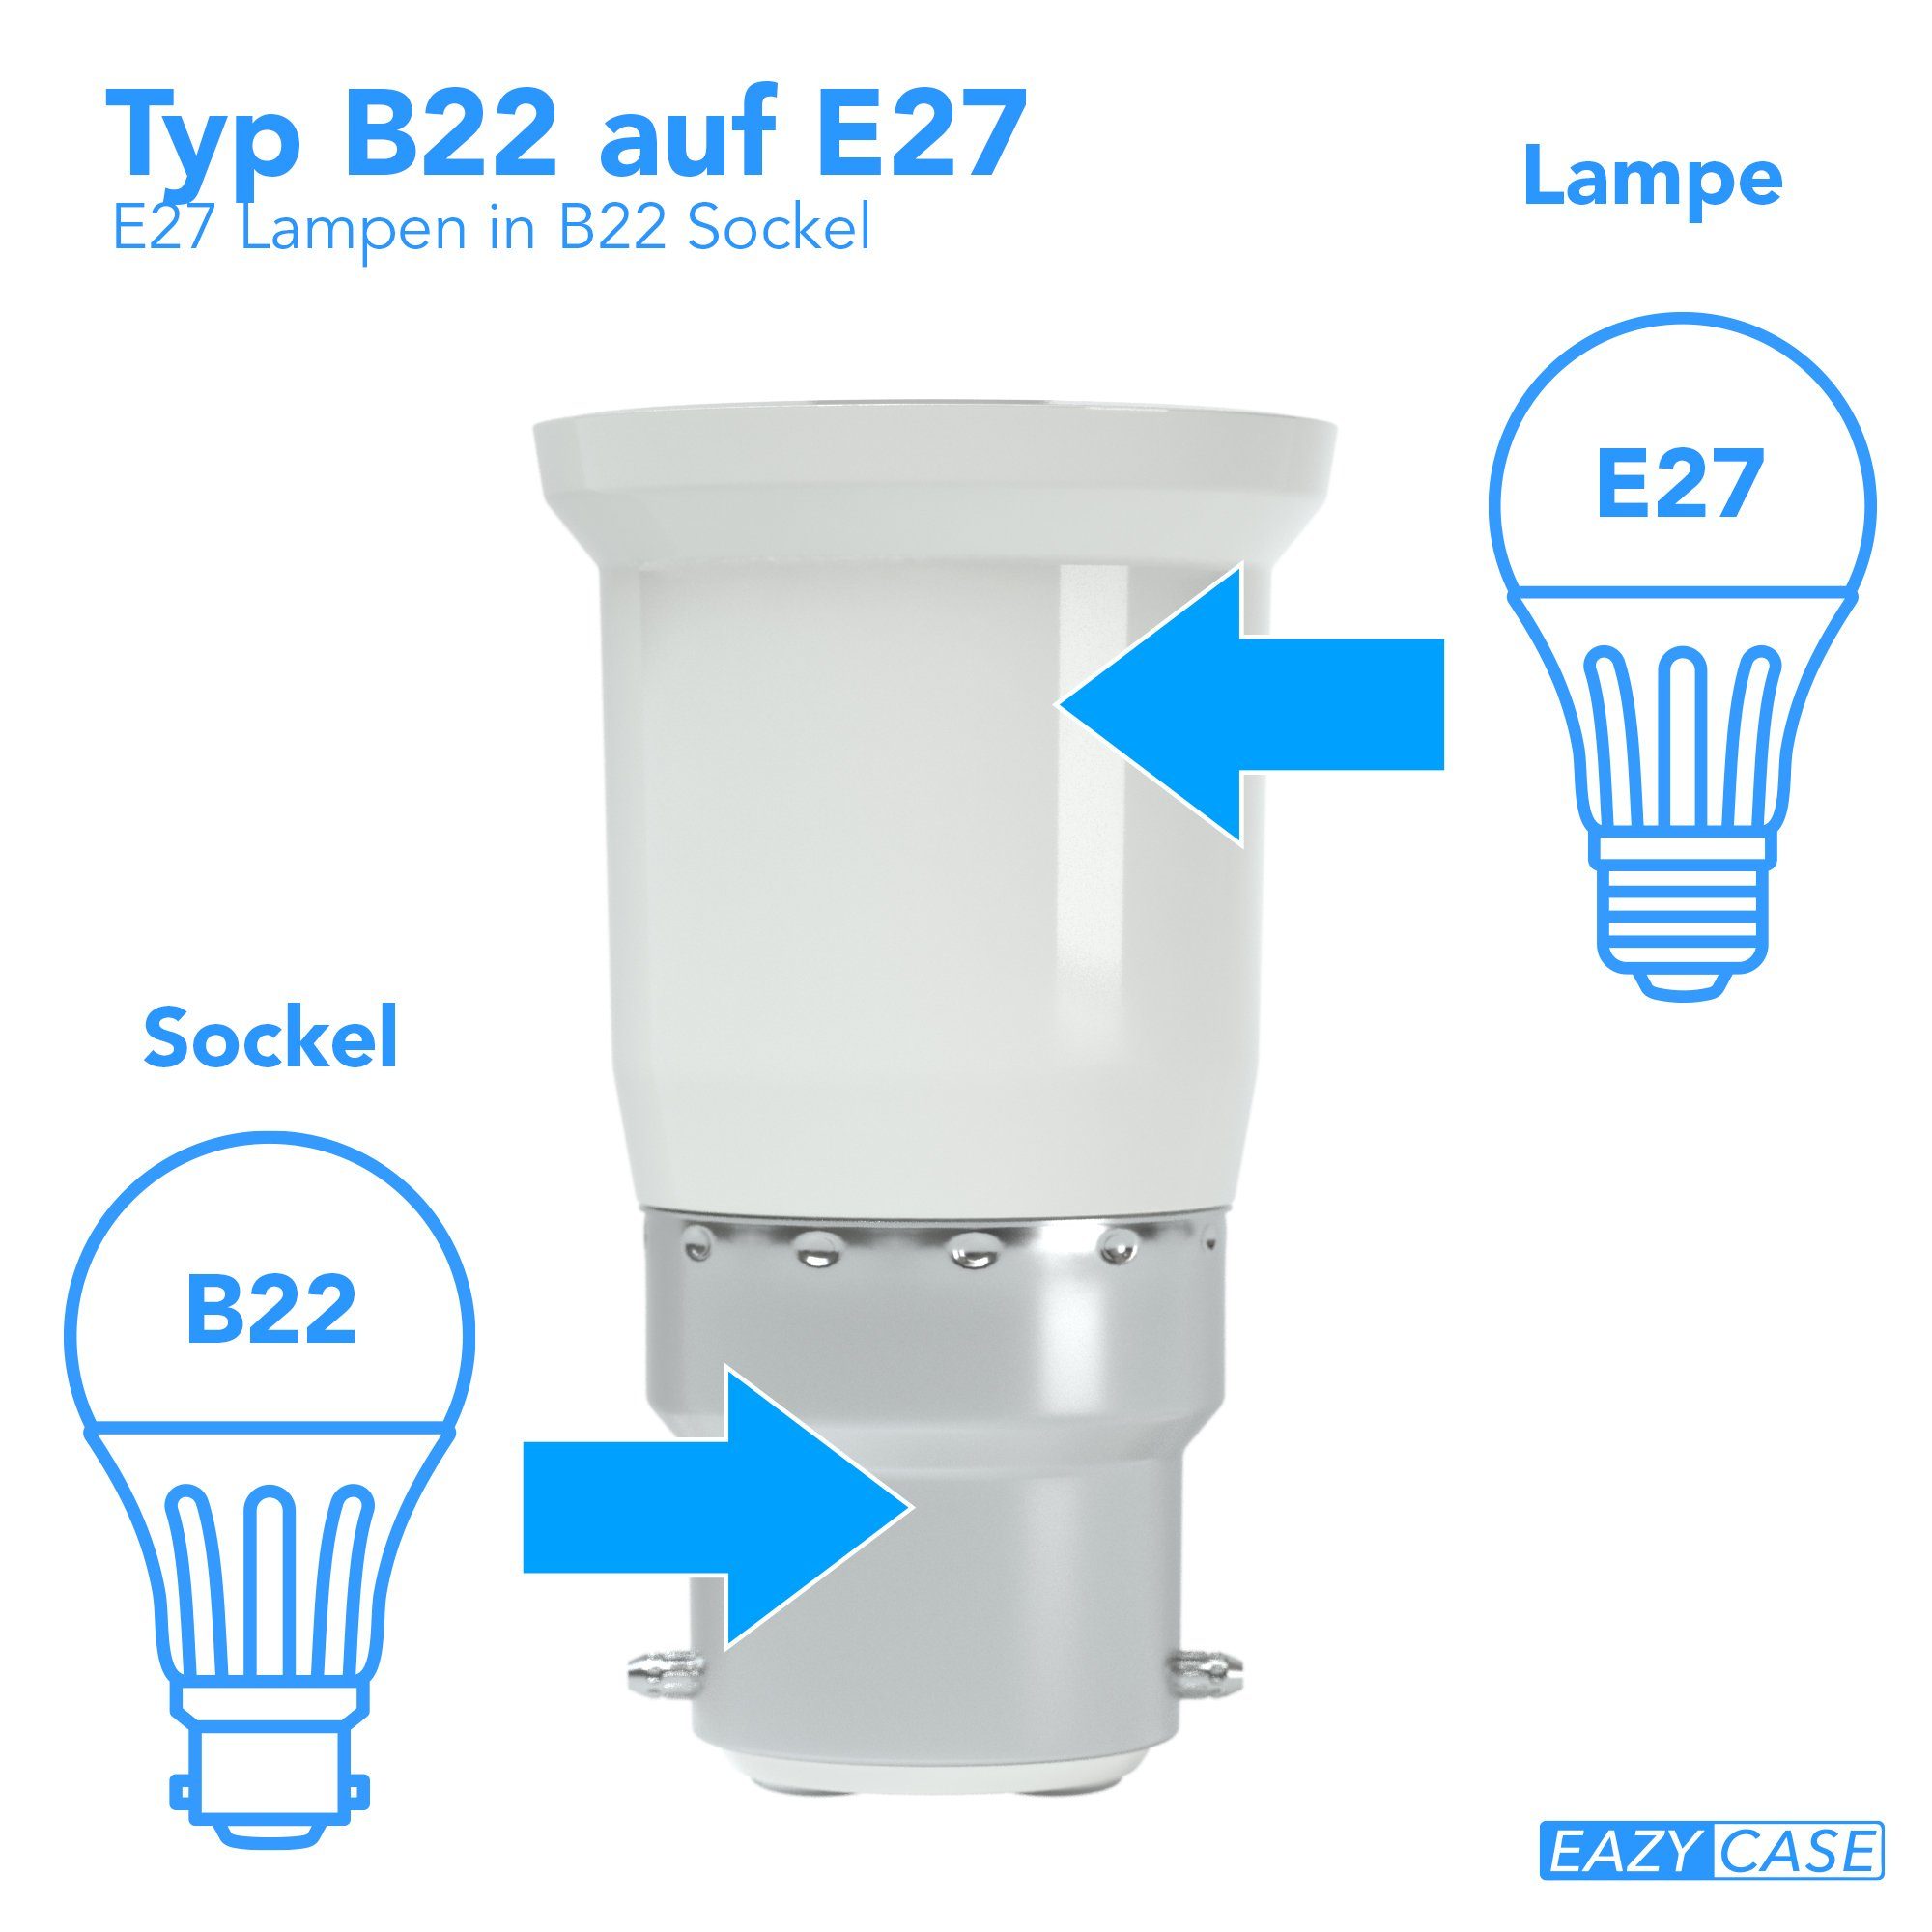 EAZY CASE Lampenfassung »Lampensockel B22 auf E27«, Lampenadapter Set,  Konverter, B22 auf E27 Adapter, Lampen Fassung, Lampensockeladapter für  LED-/Halogen- und Energiesparlampen, 4er Set Weiß online kaufen | OTTO